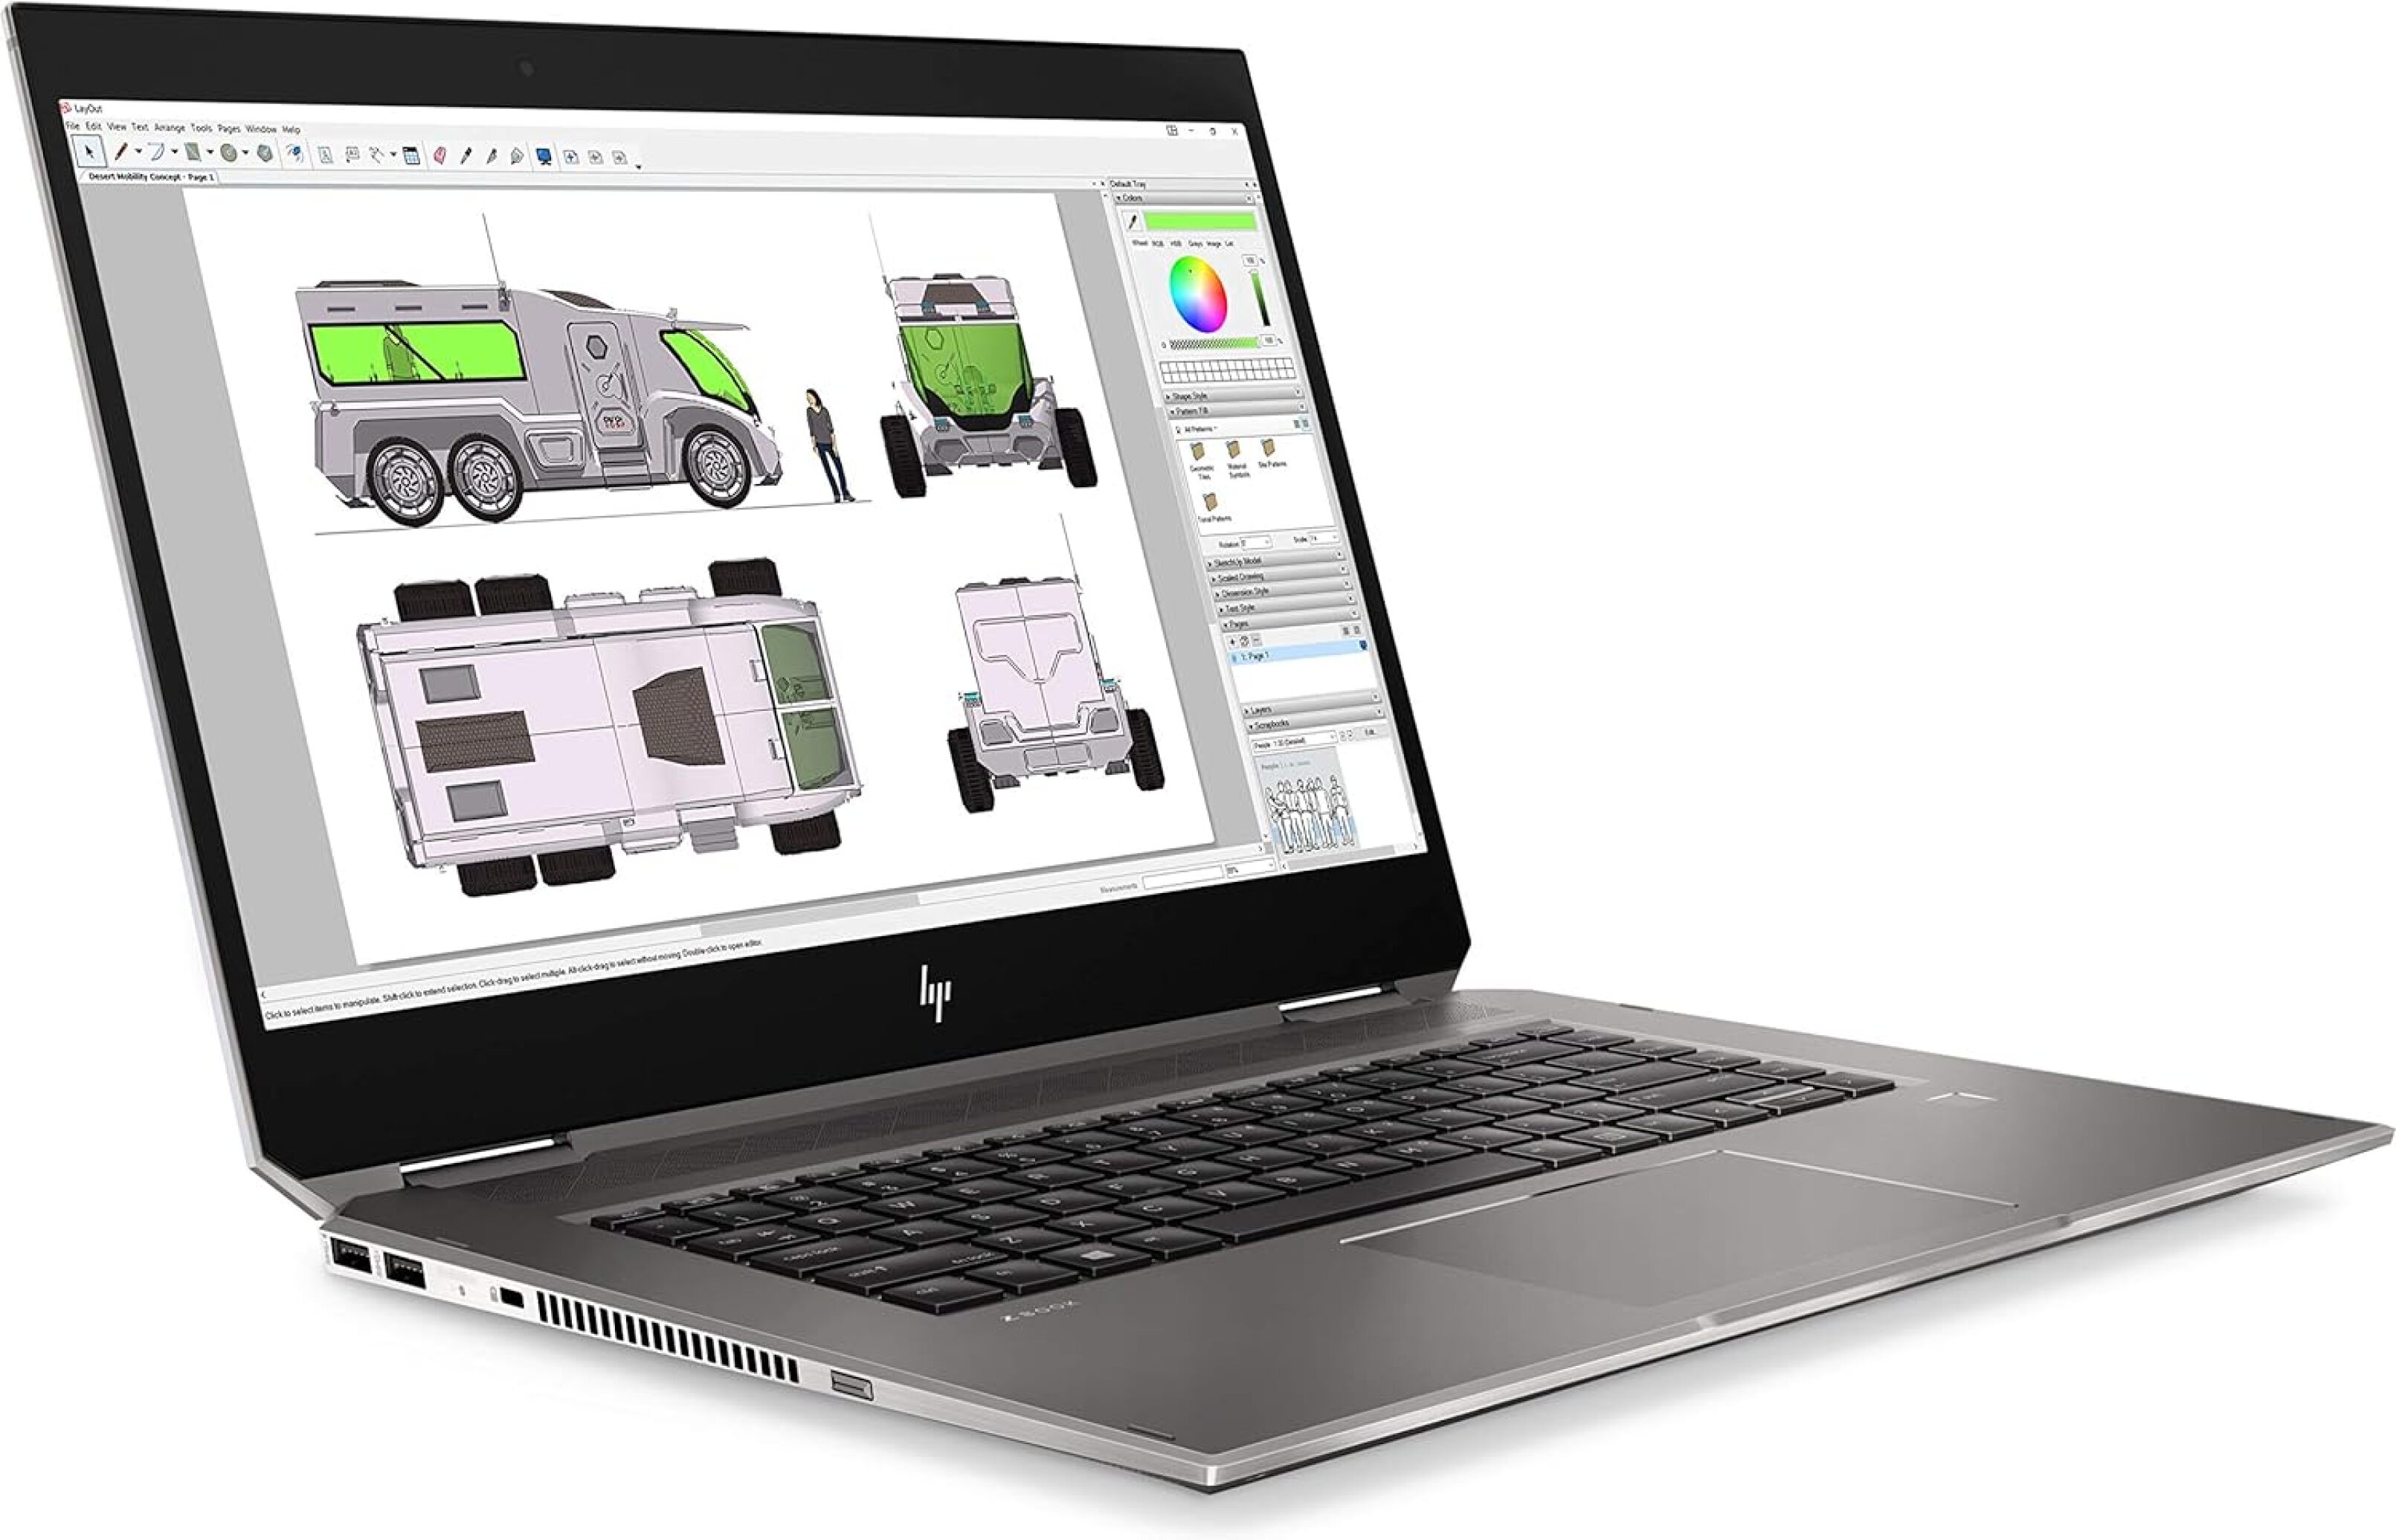  قیمت لپ تاپ HP ZBook Studio 15 G5 X360 CORE i7 9750H 16GB 512GB Quadro P1000 4GB | لاکچری لپ تاپ 